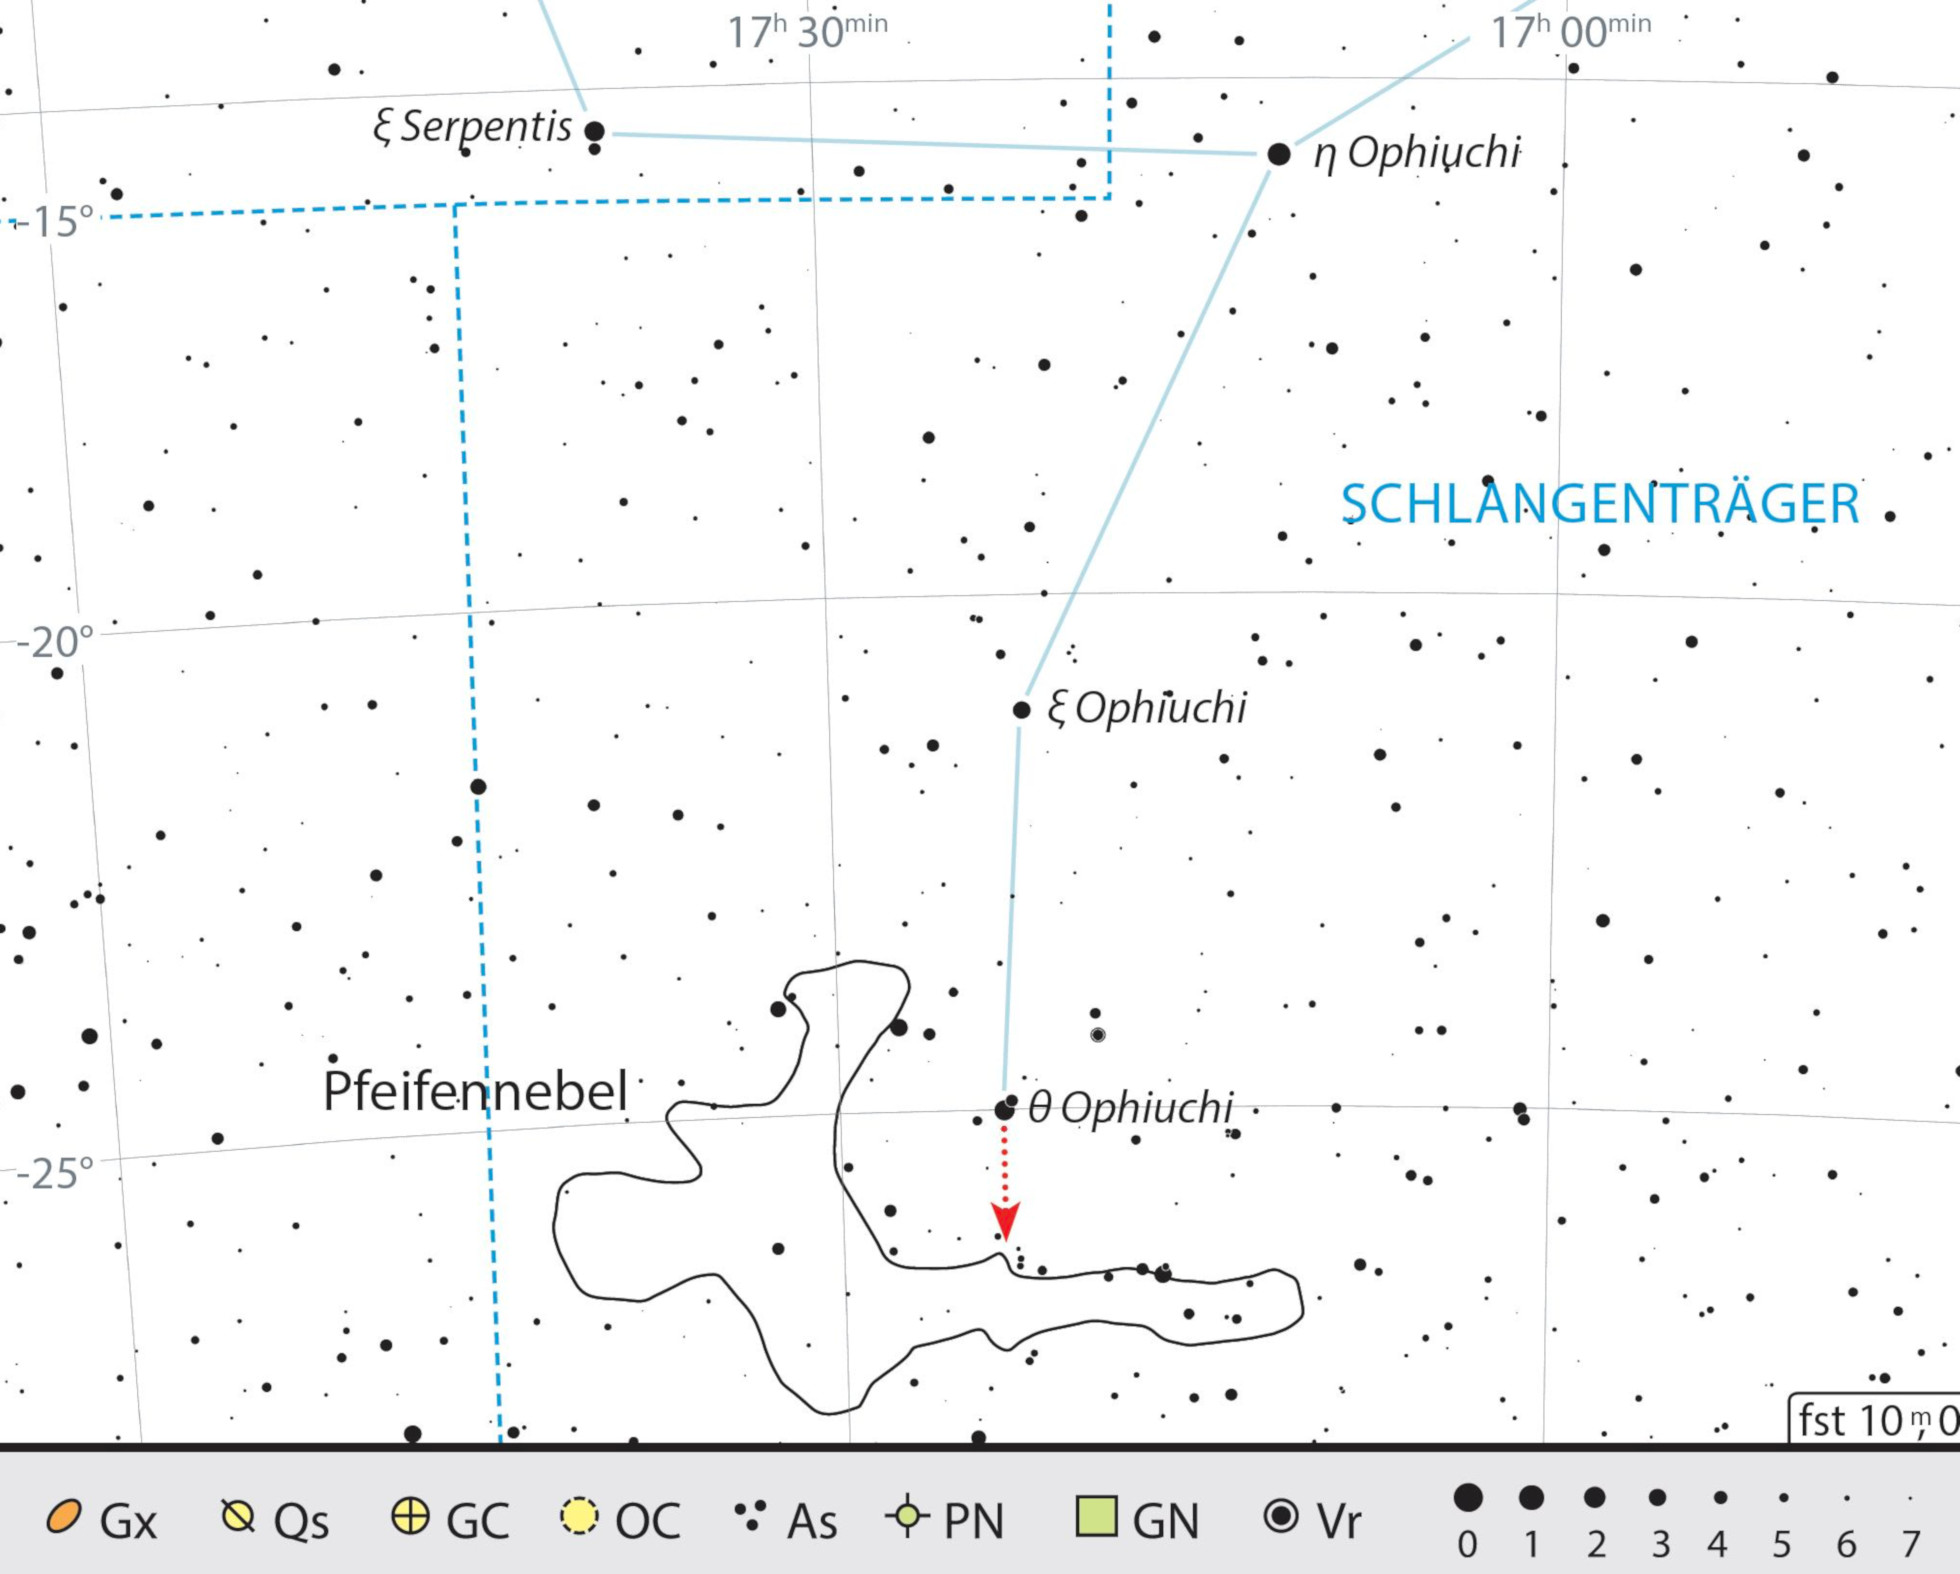 Mappa celeste per la nebulosa Pipa nella costellazione dell'Ofiuco. J. Scholten